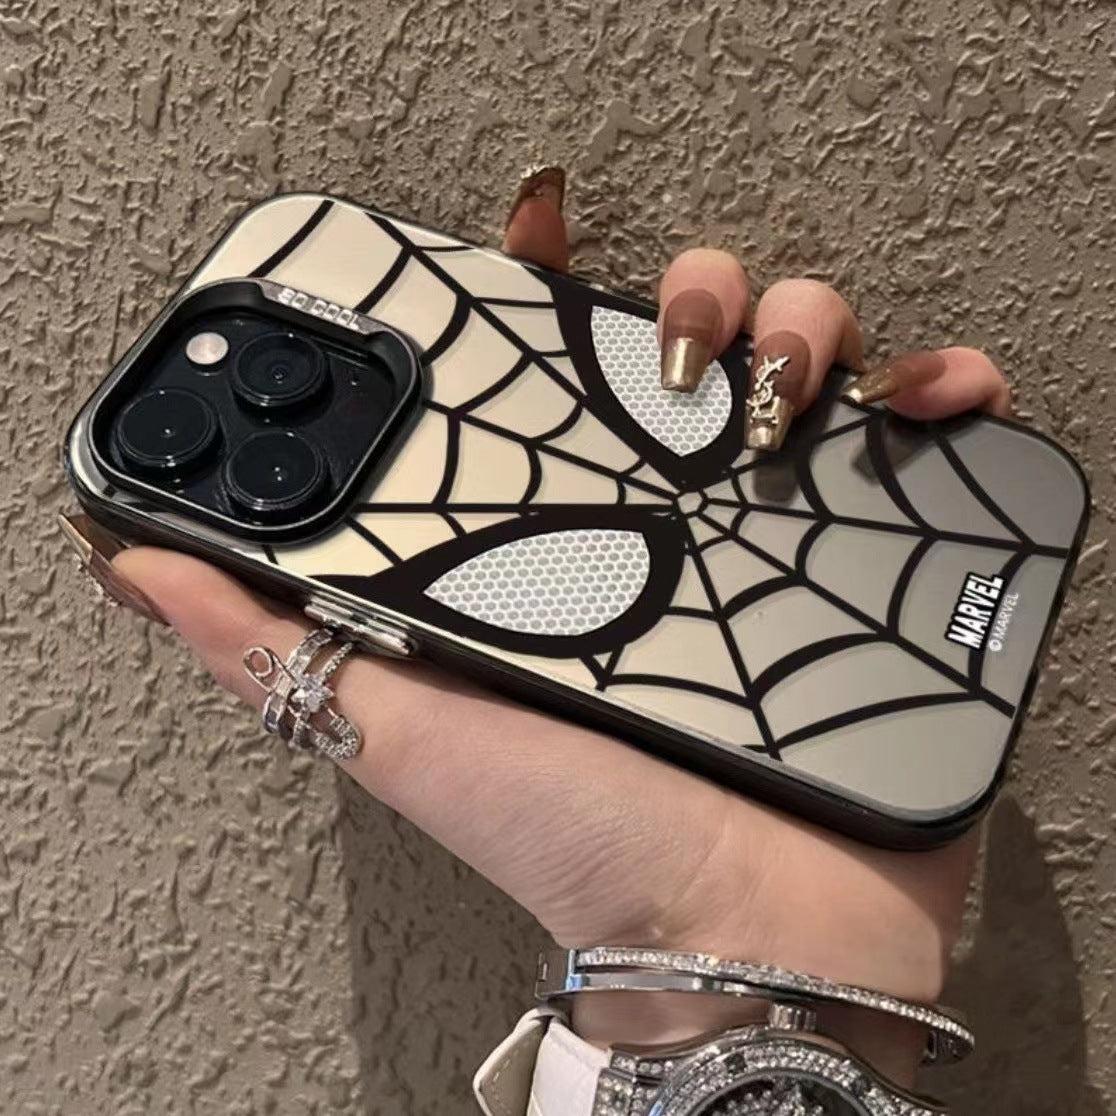 Spider man iphone case